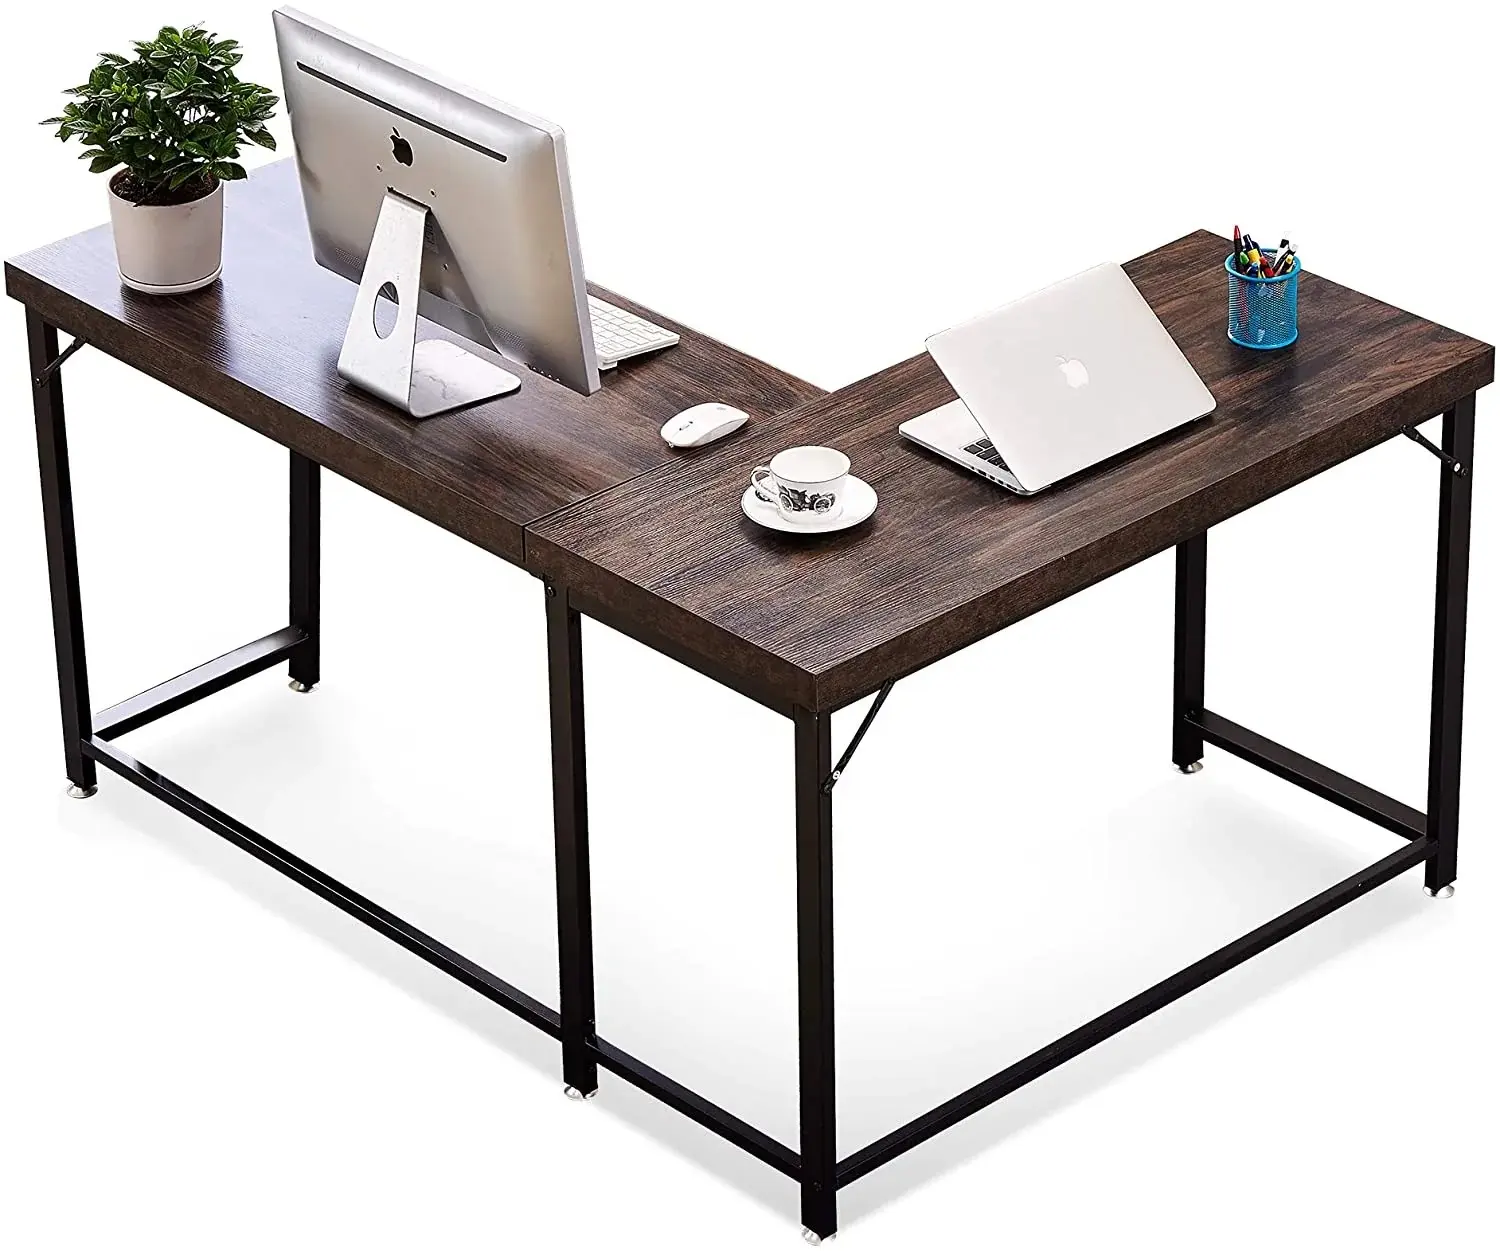 بسهولة تجميعها عالية العصرية و أثاث مكتبي عصري سطح المكتب الجدول الصلبة خشبية و معدنية الإطار طاولة مكتبية